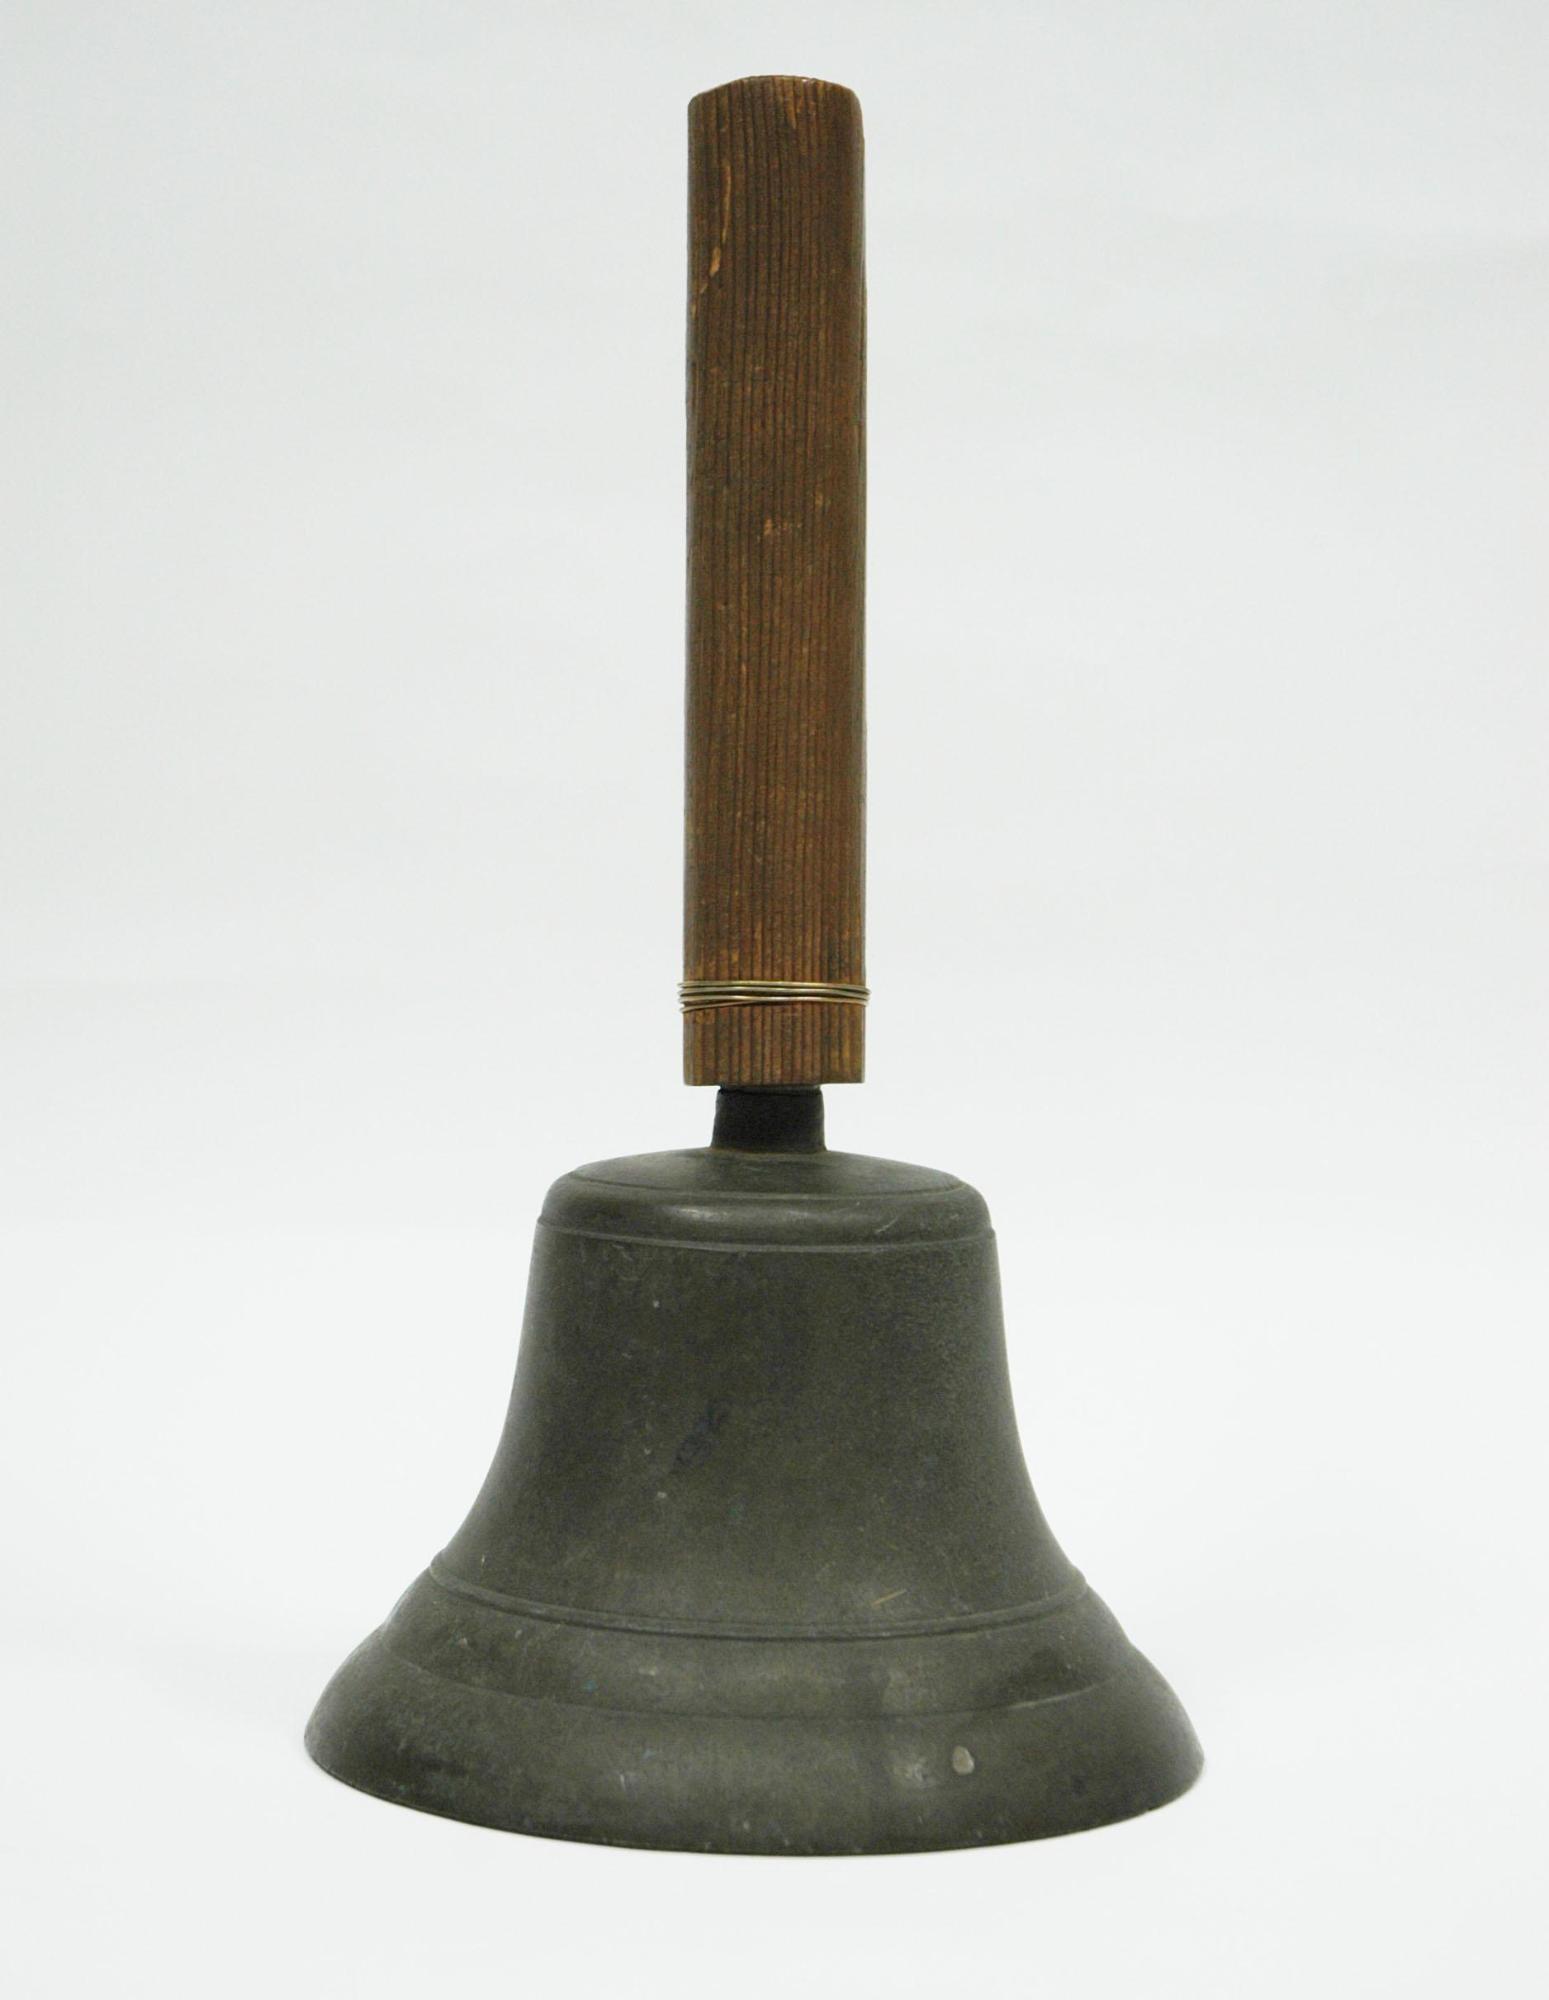 木製の持ち手の下に、銅製で台形のベルの写真